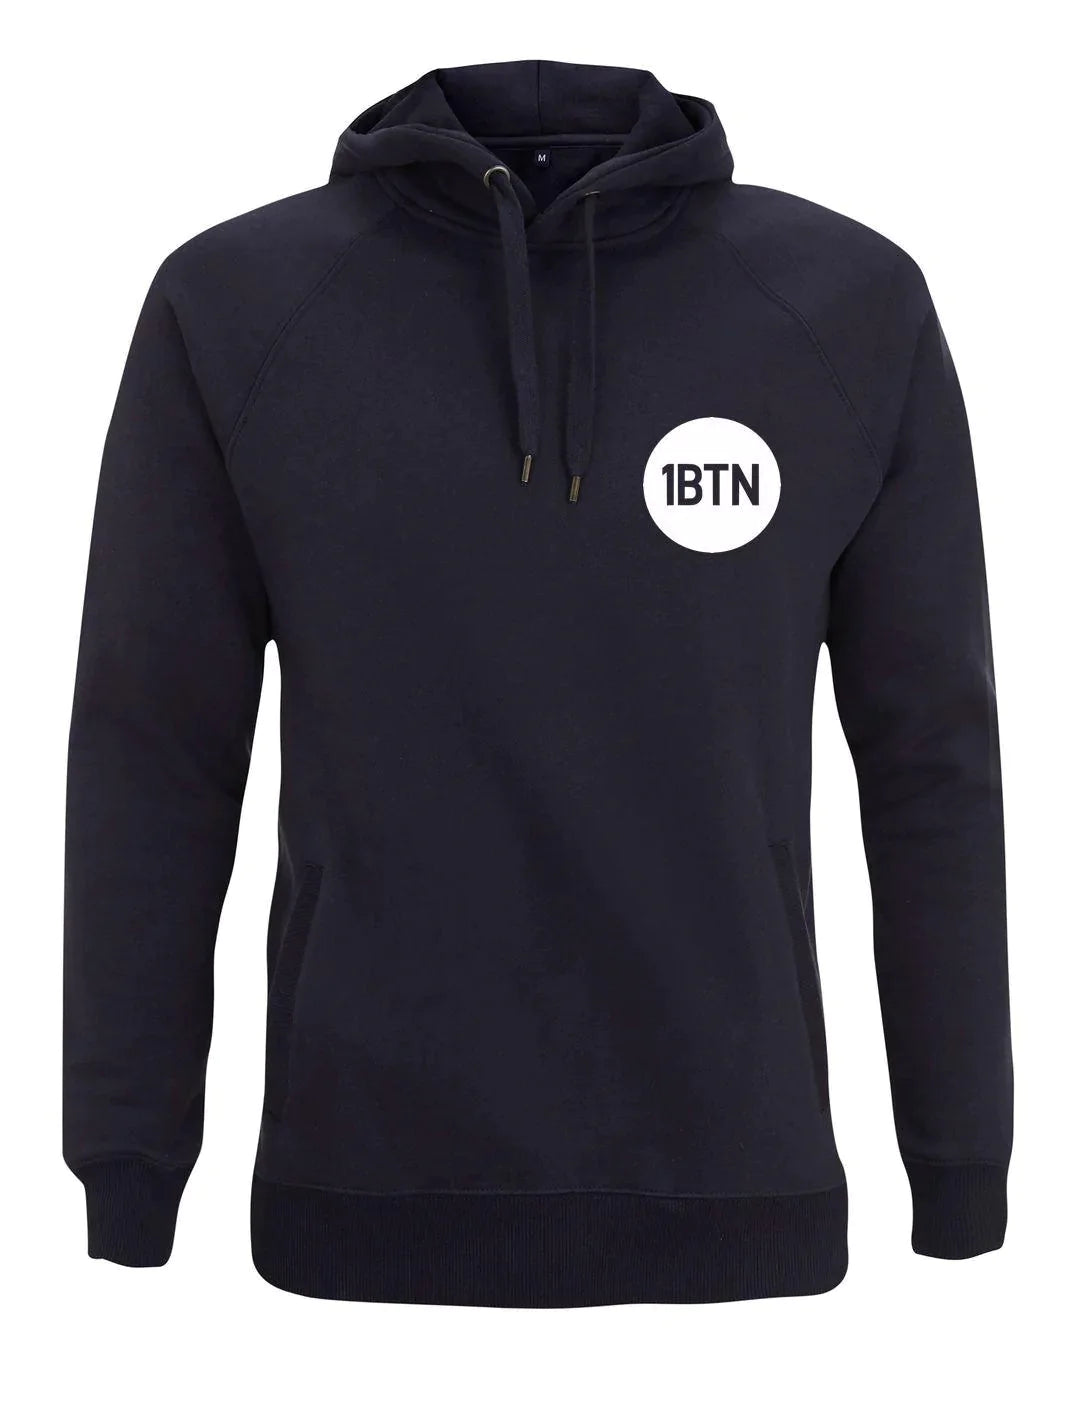 1BTN CHEST LOGO: Hoodie Official Merchandise of 1BTN.FM (5 Colour Options) - SOUND IS COLOUR